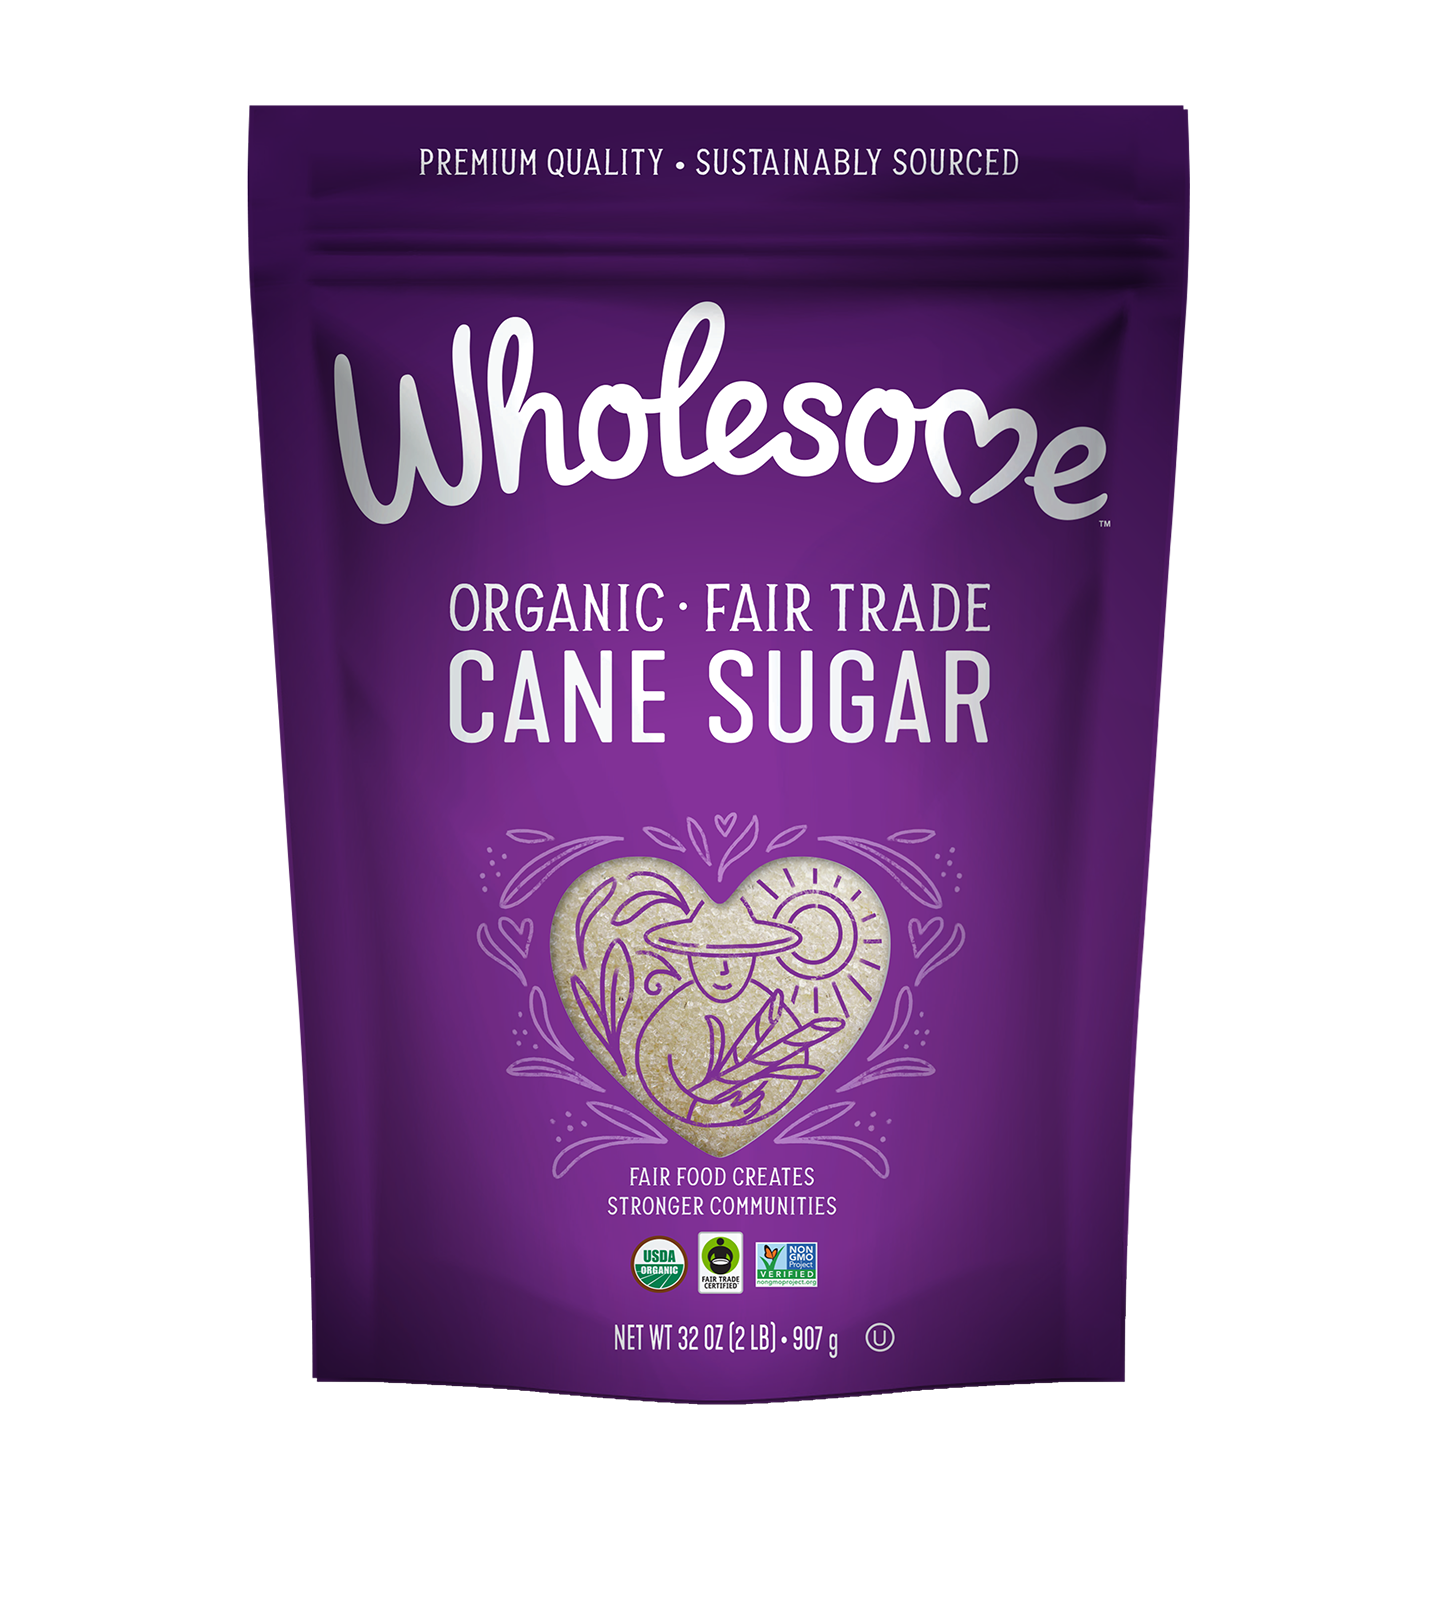 Organic Cane Sugar - Carousel Image